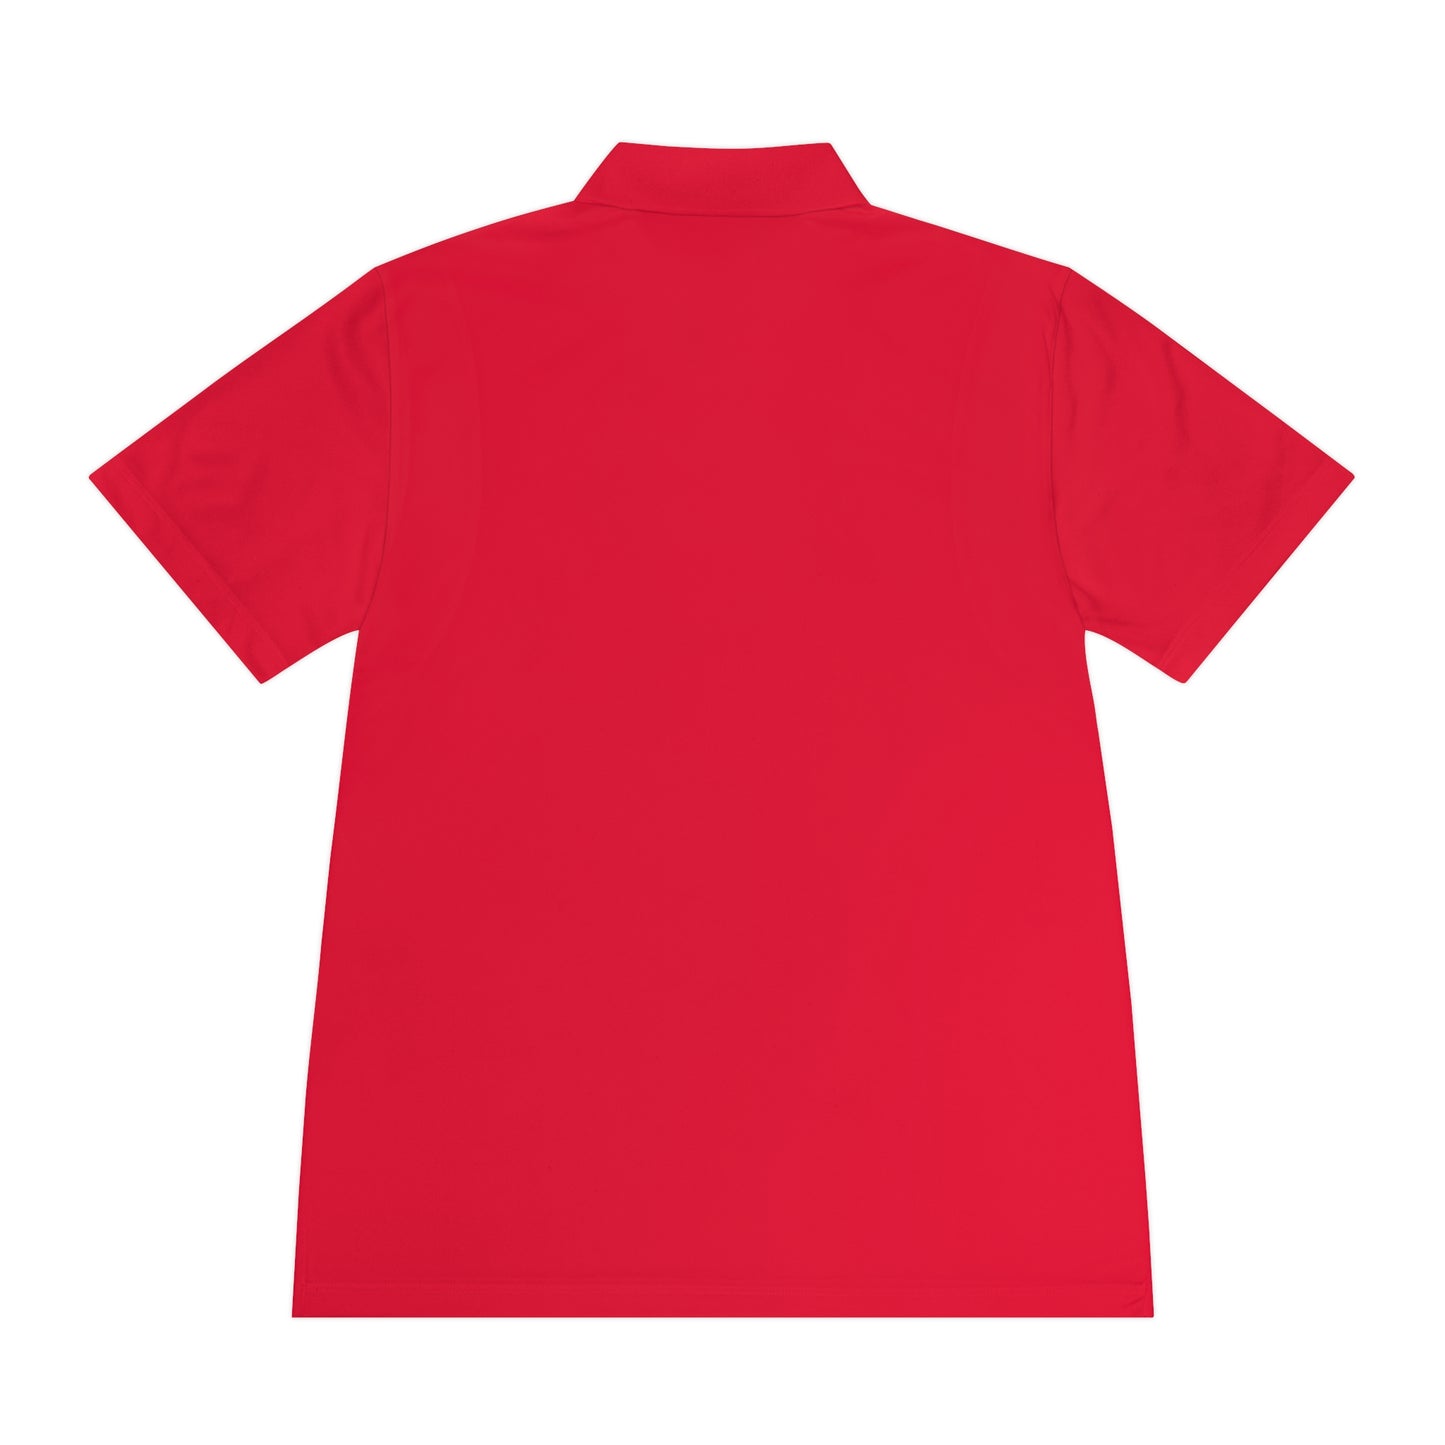 Socratezzz - Men's Sport Polo Shirt